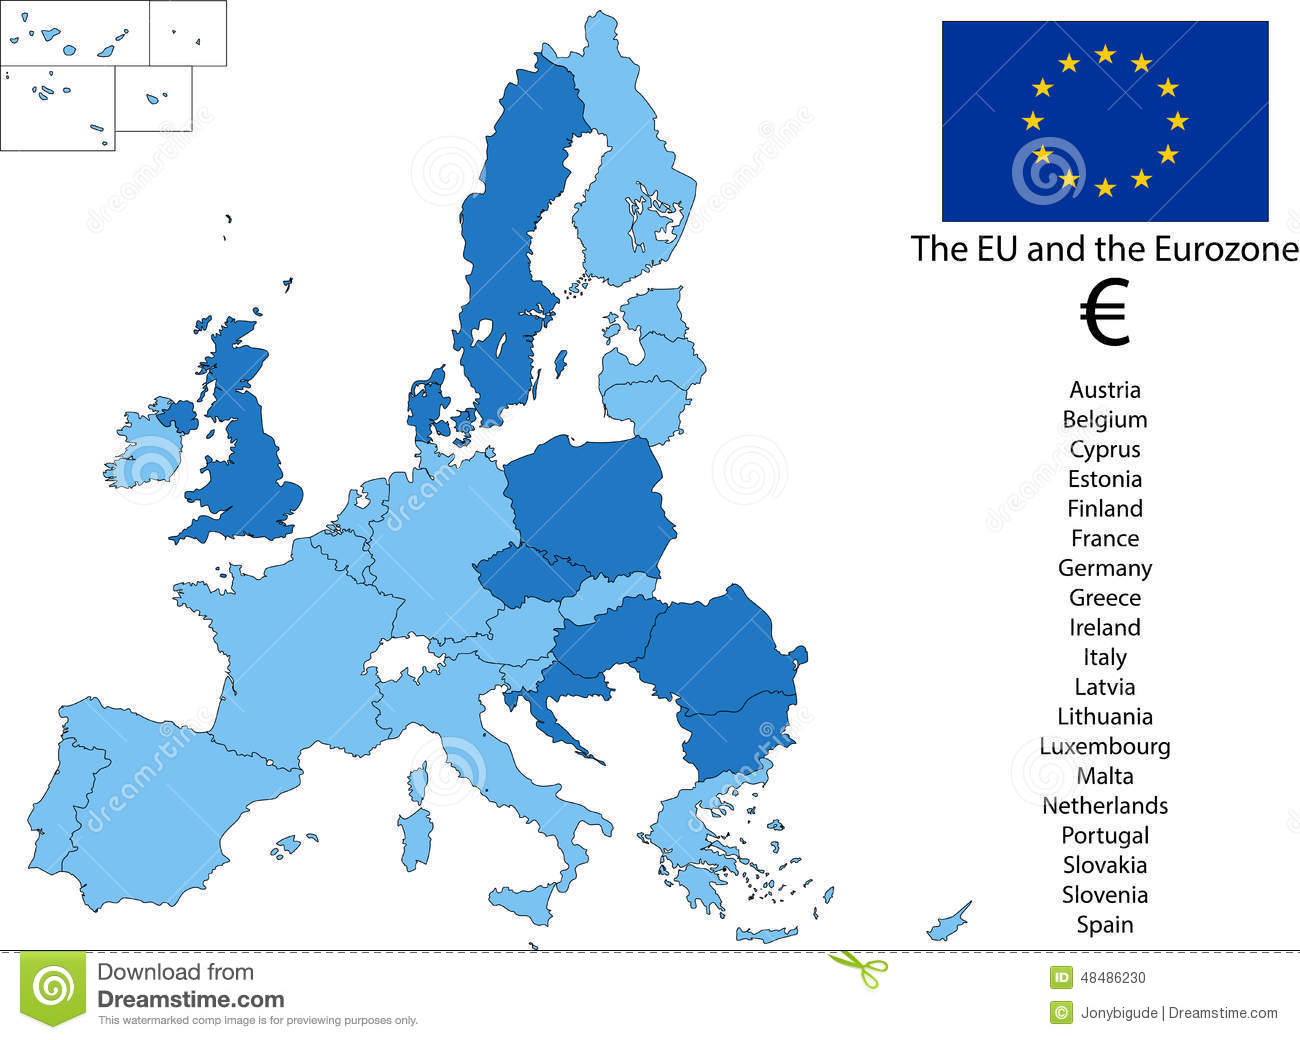 Майбутнє Єврозони, або чи перейдуть сусідні країни на євро? (спеціально для BukNews з Лондона)